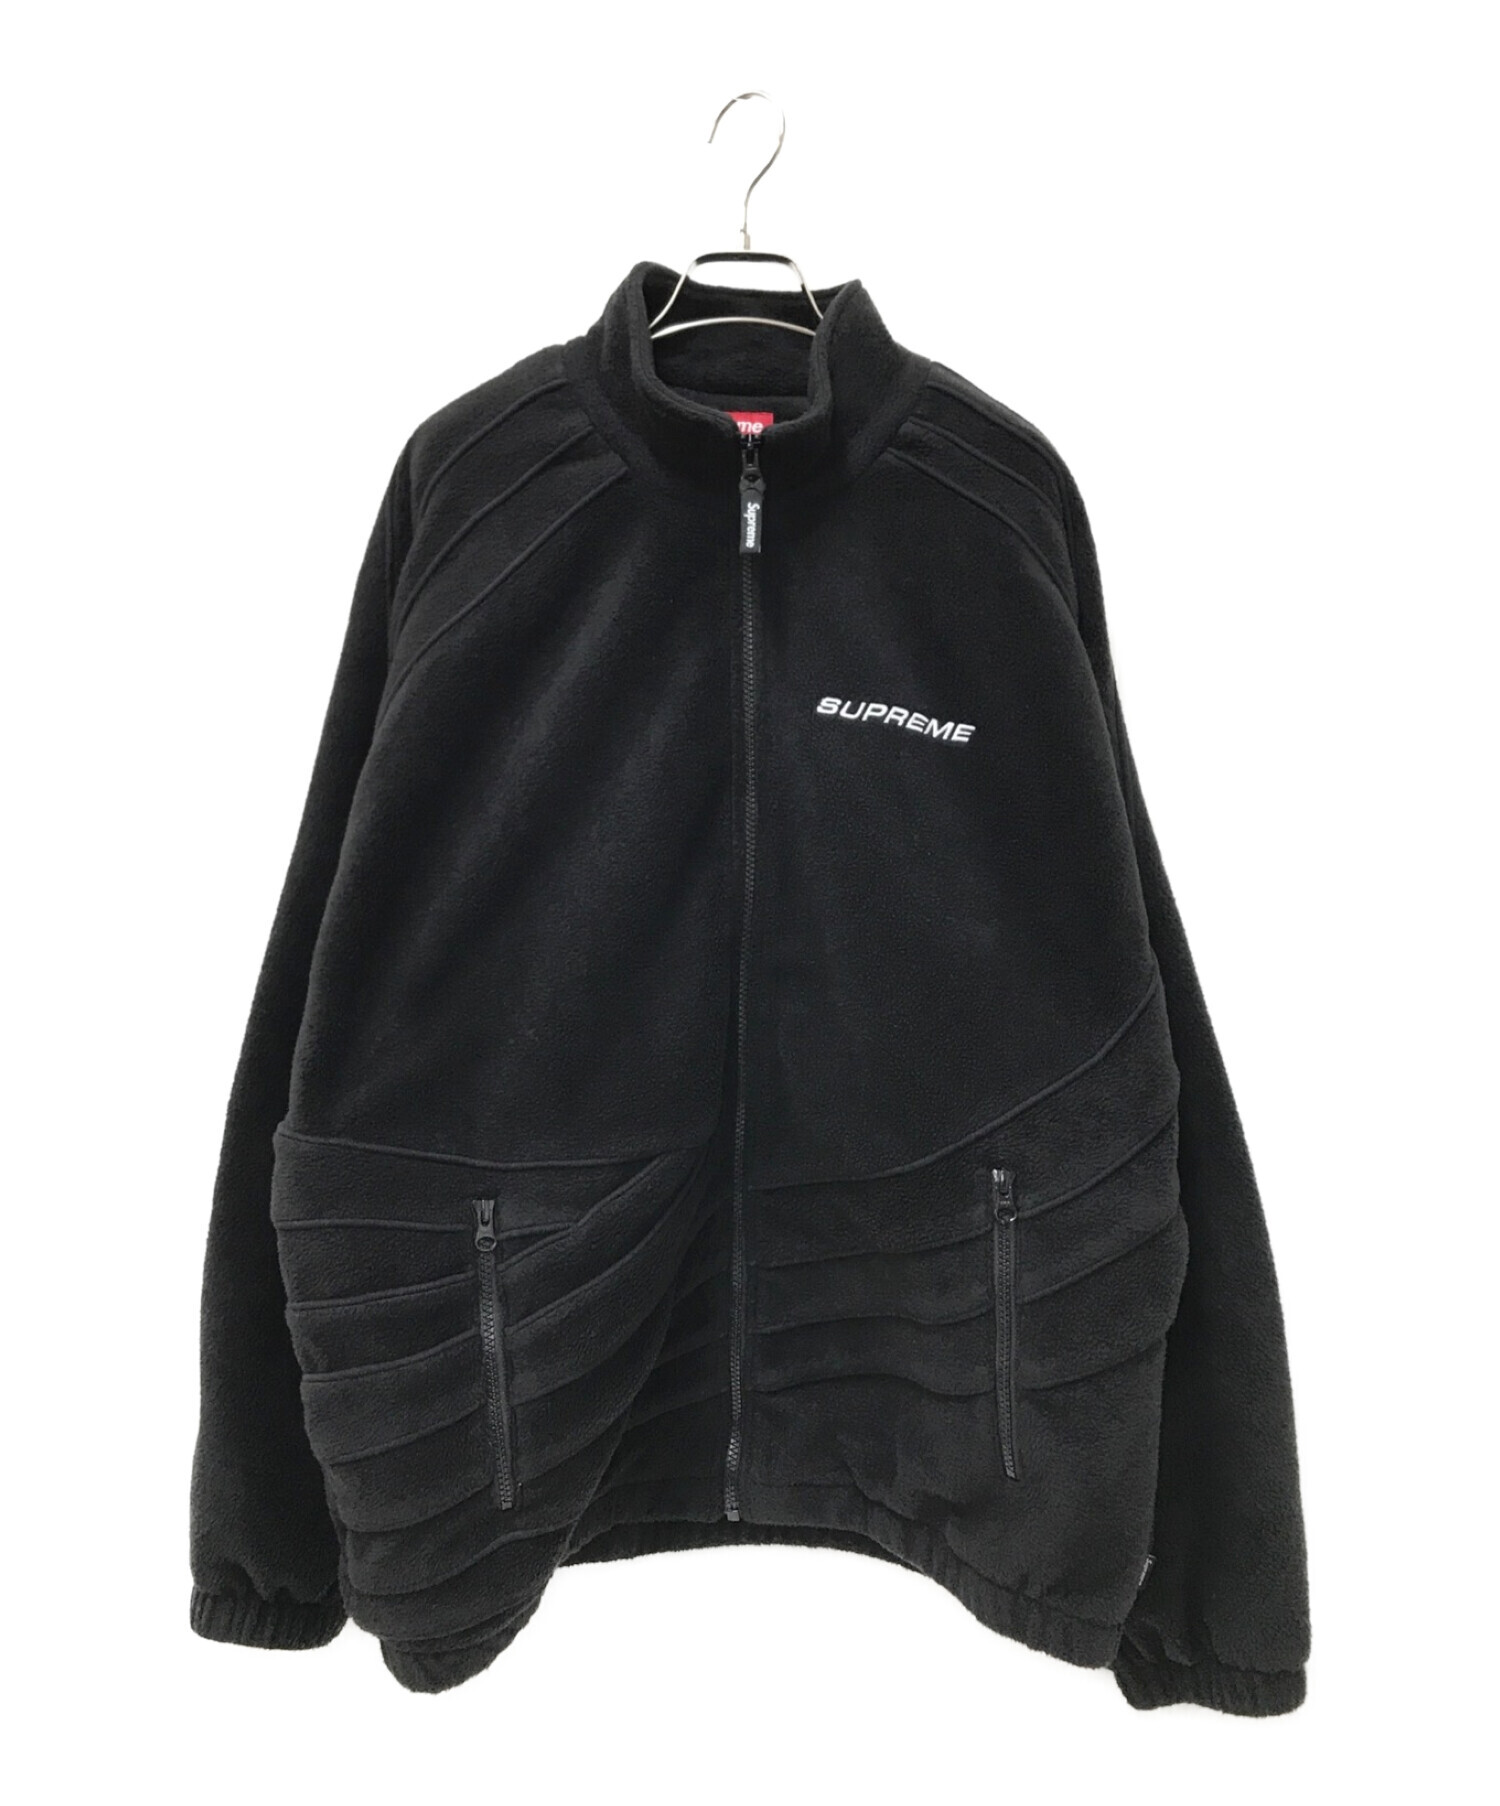 supremeSupreme racing fleece jacket 23ss